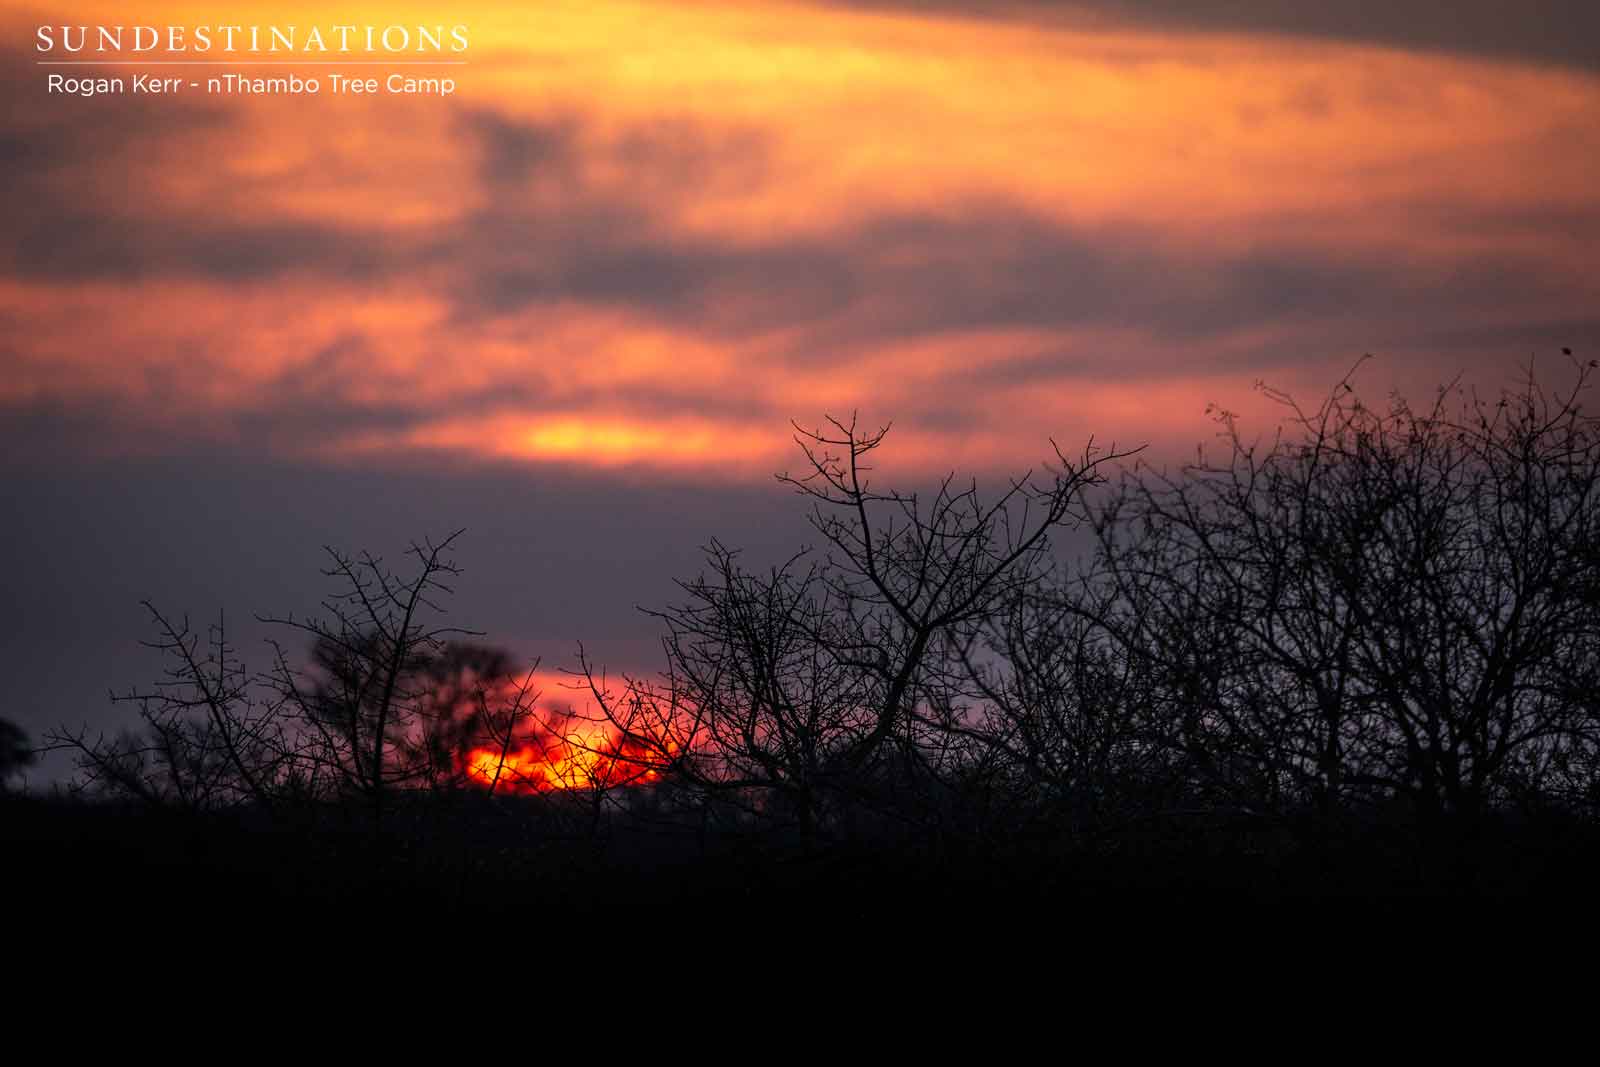 Sunset at nThambo Tree Camp